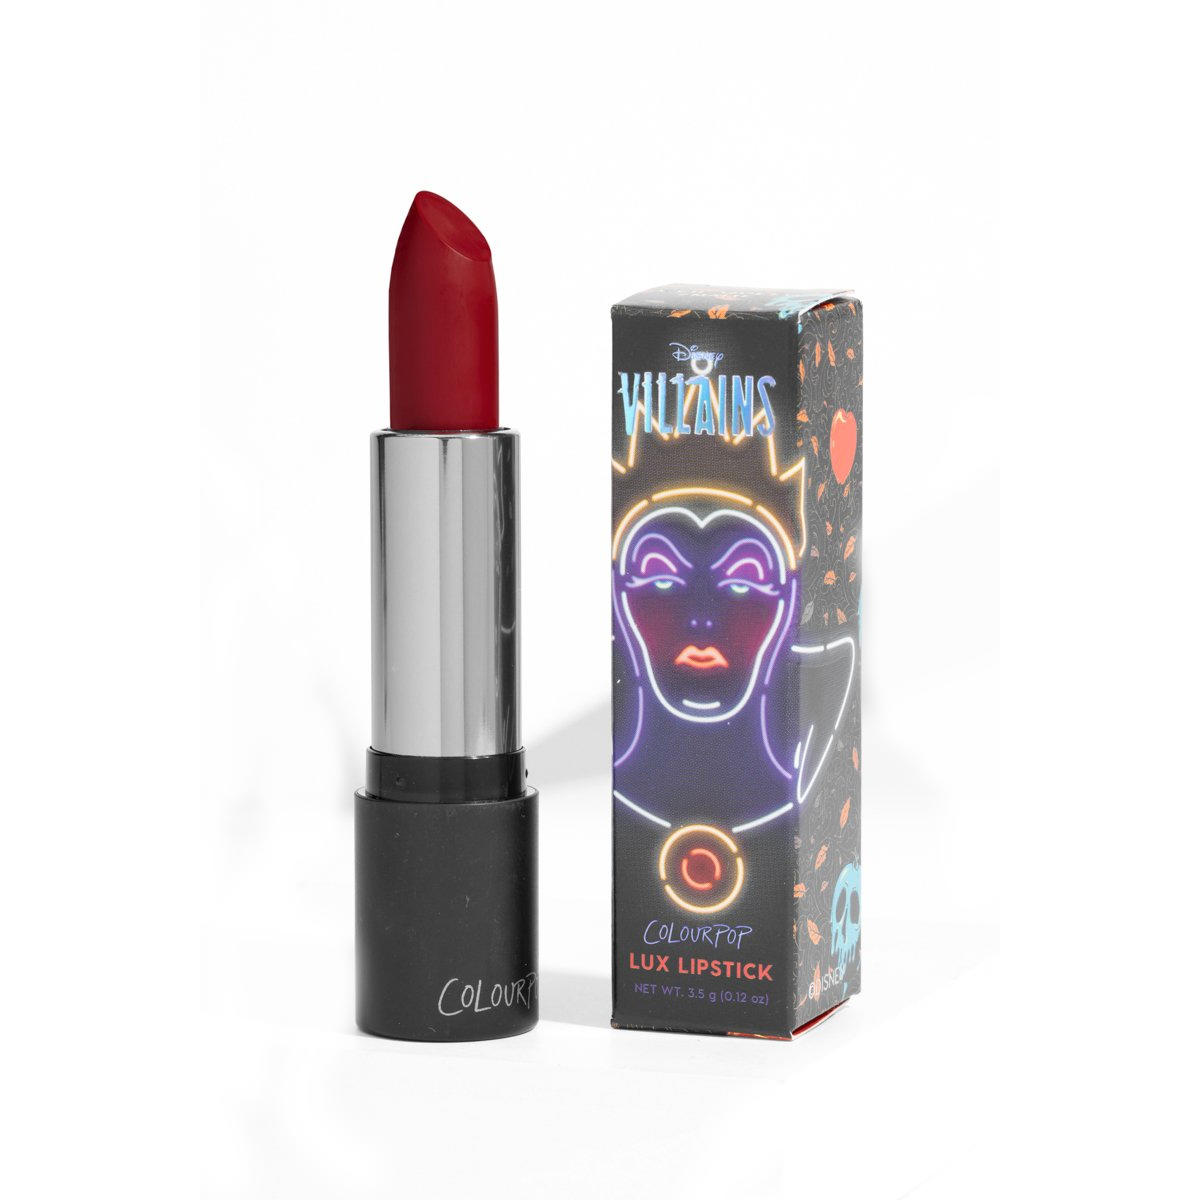 Colourpop Lux Lipstick Evil Queen Villains Collection